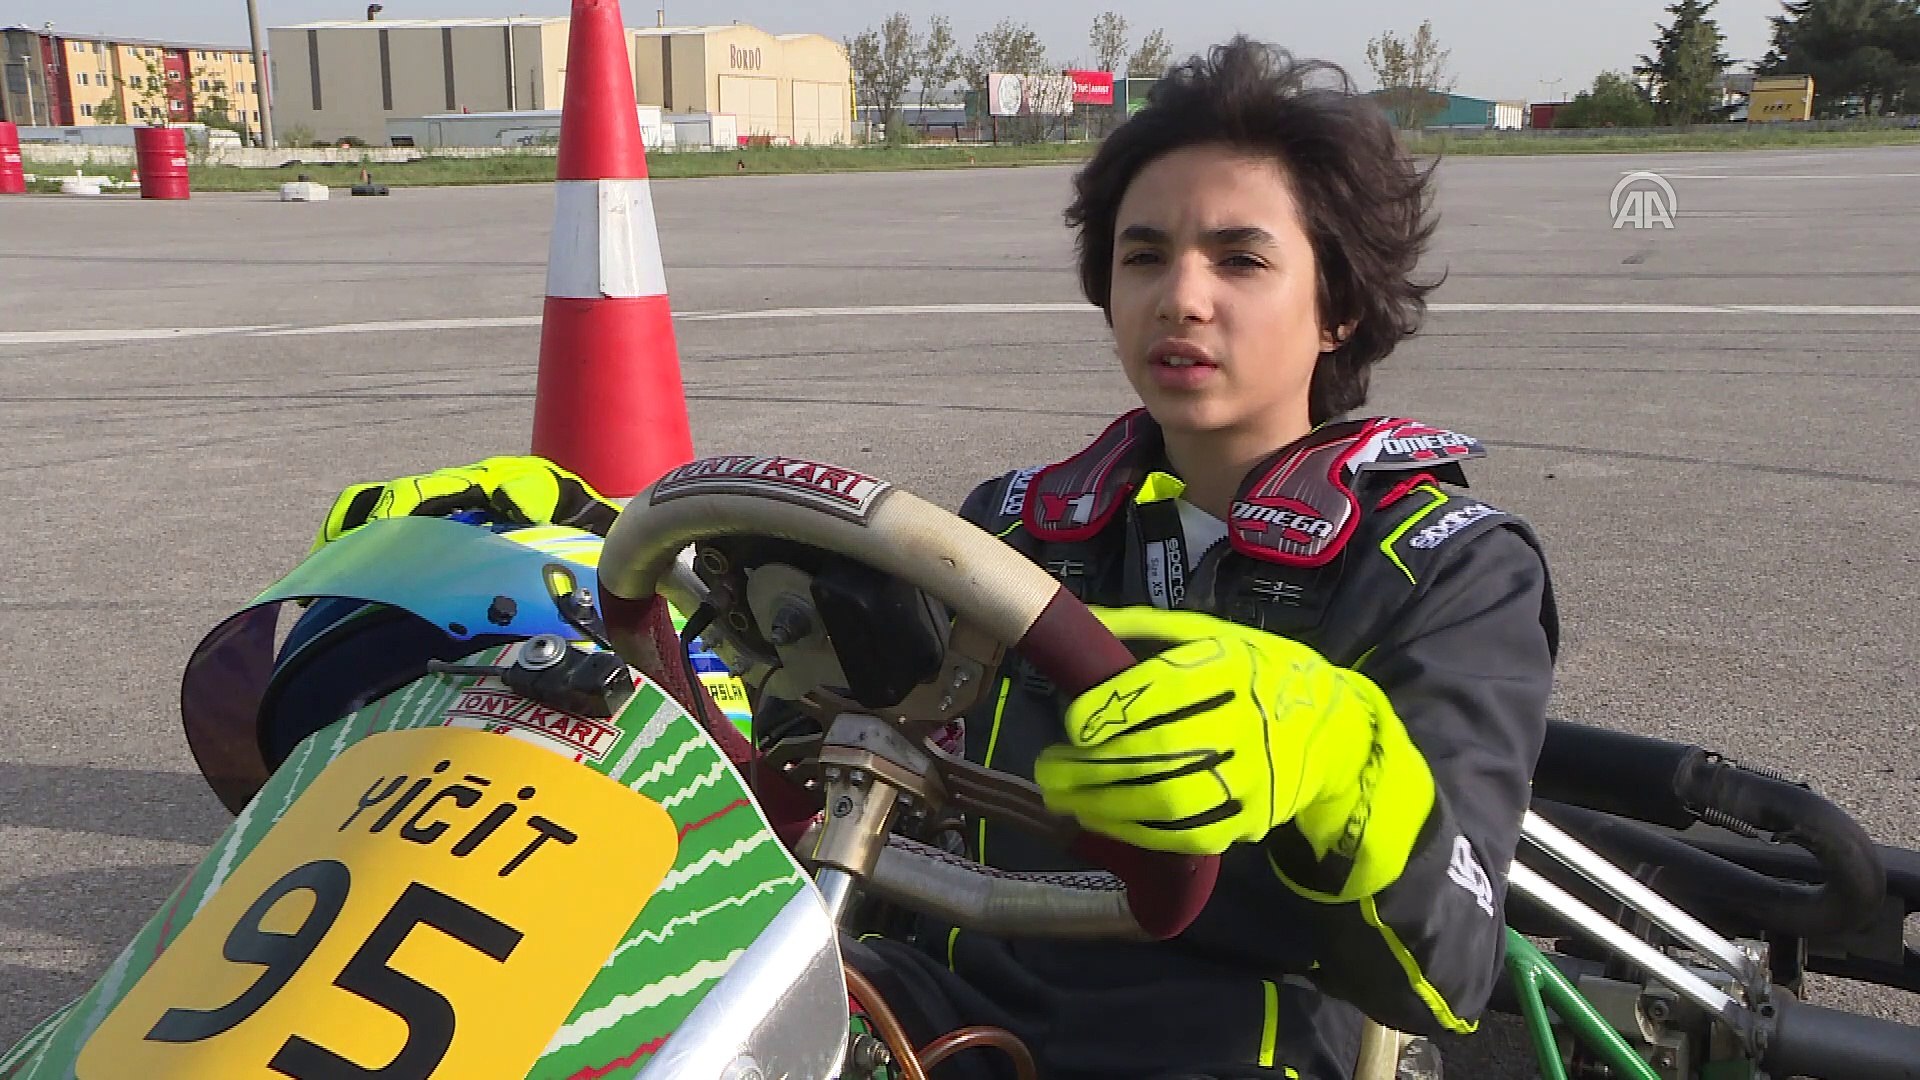 20 Yasimda Formula 1 Pilotu Olmak Istiyorum Istanbul Dailymotion Video